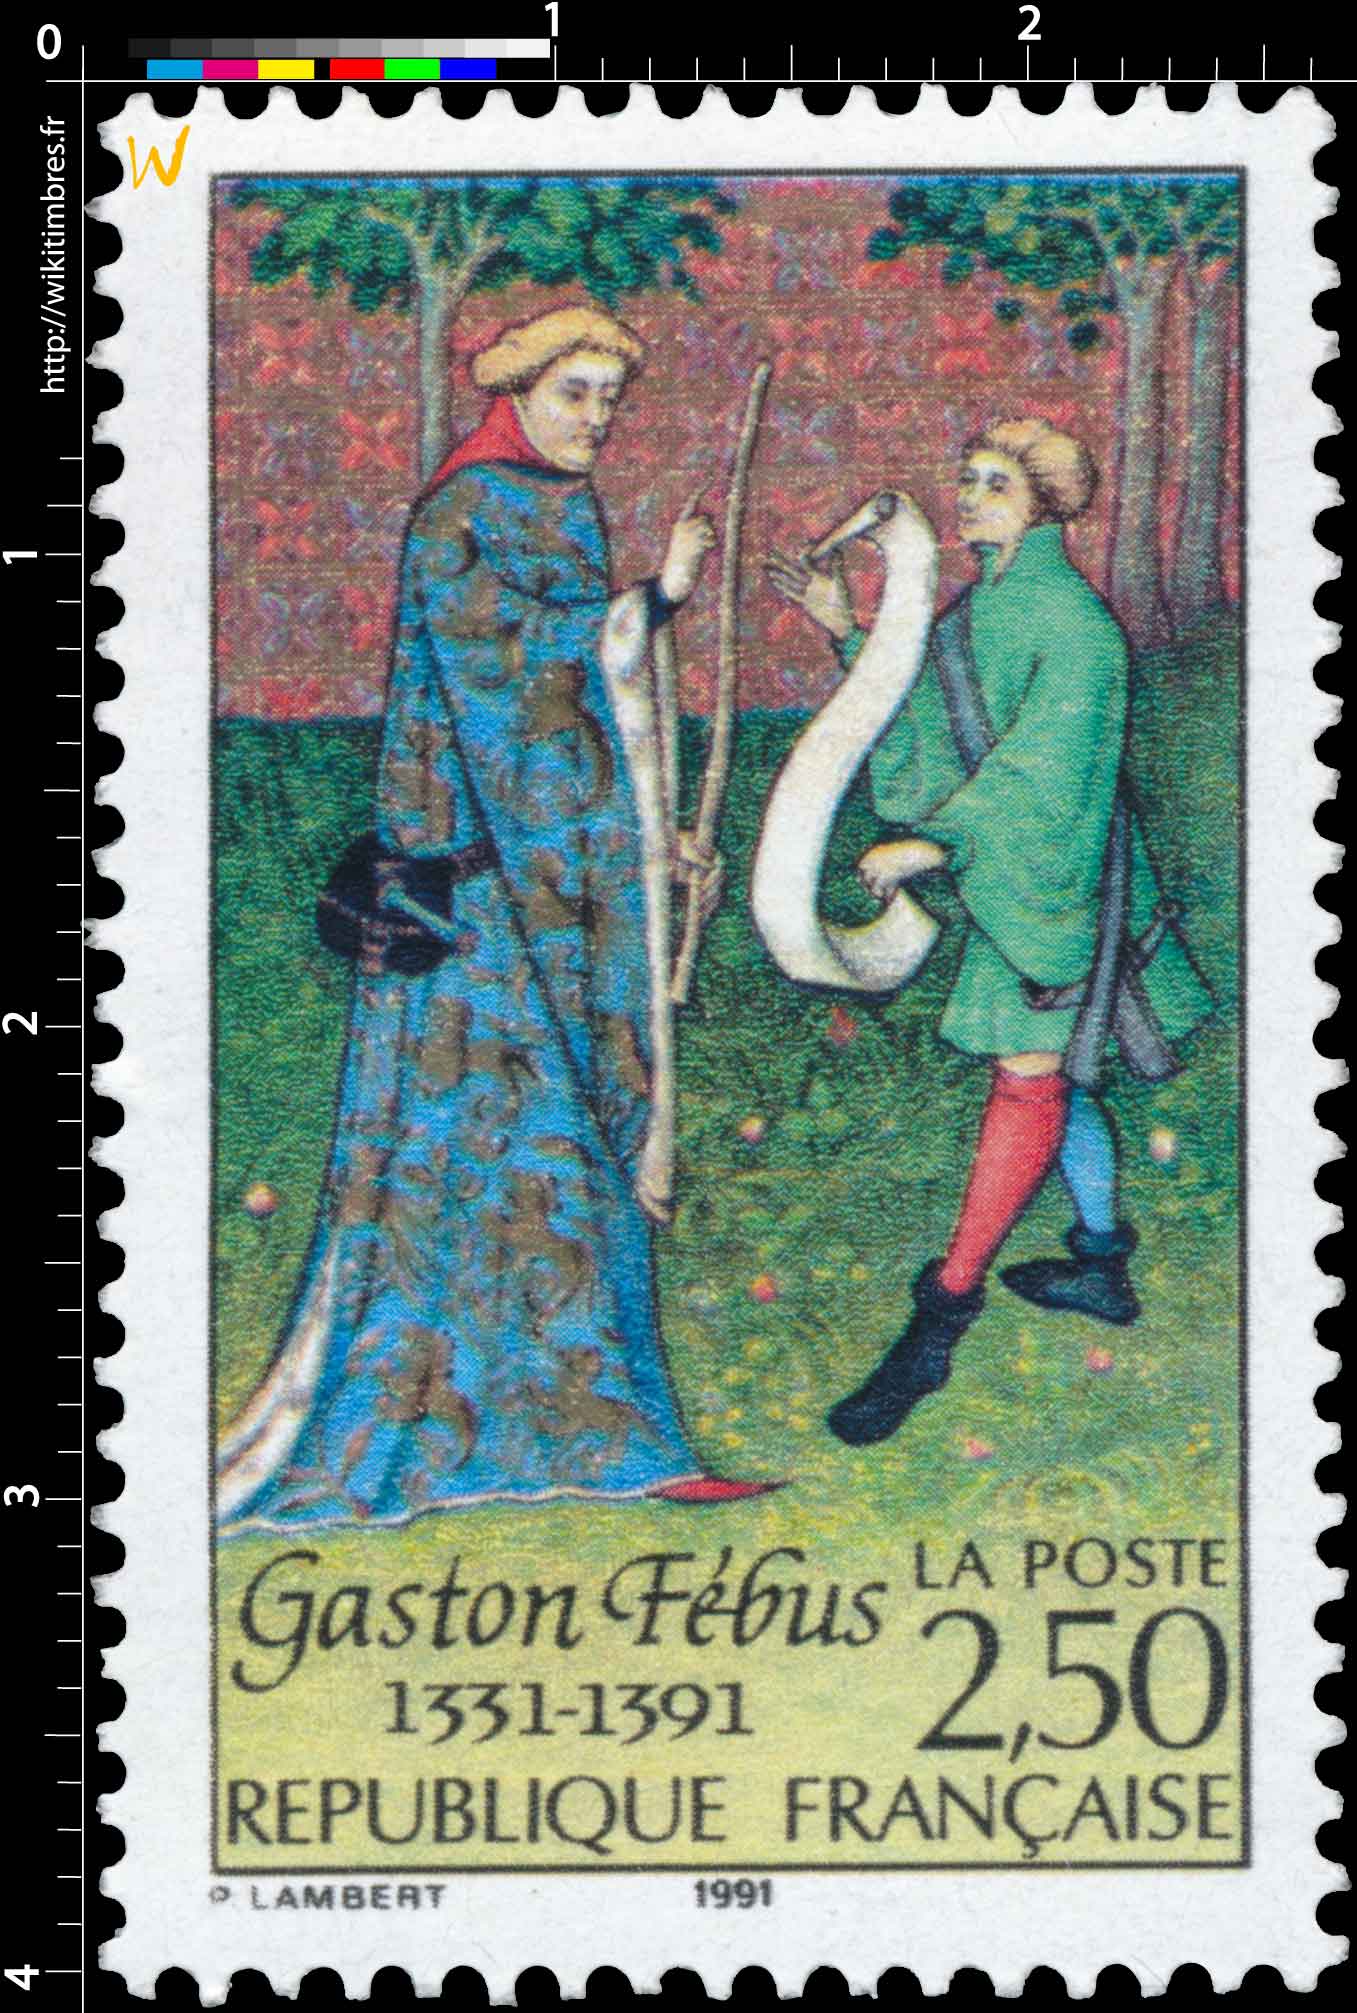 1991 Gaston Fébus 1331-1391